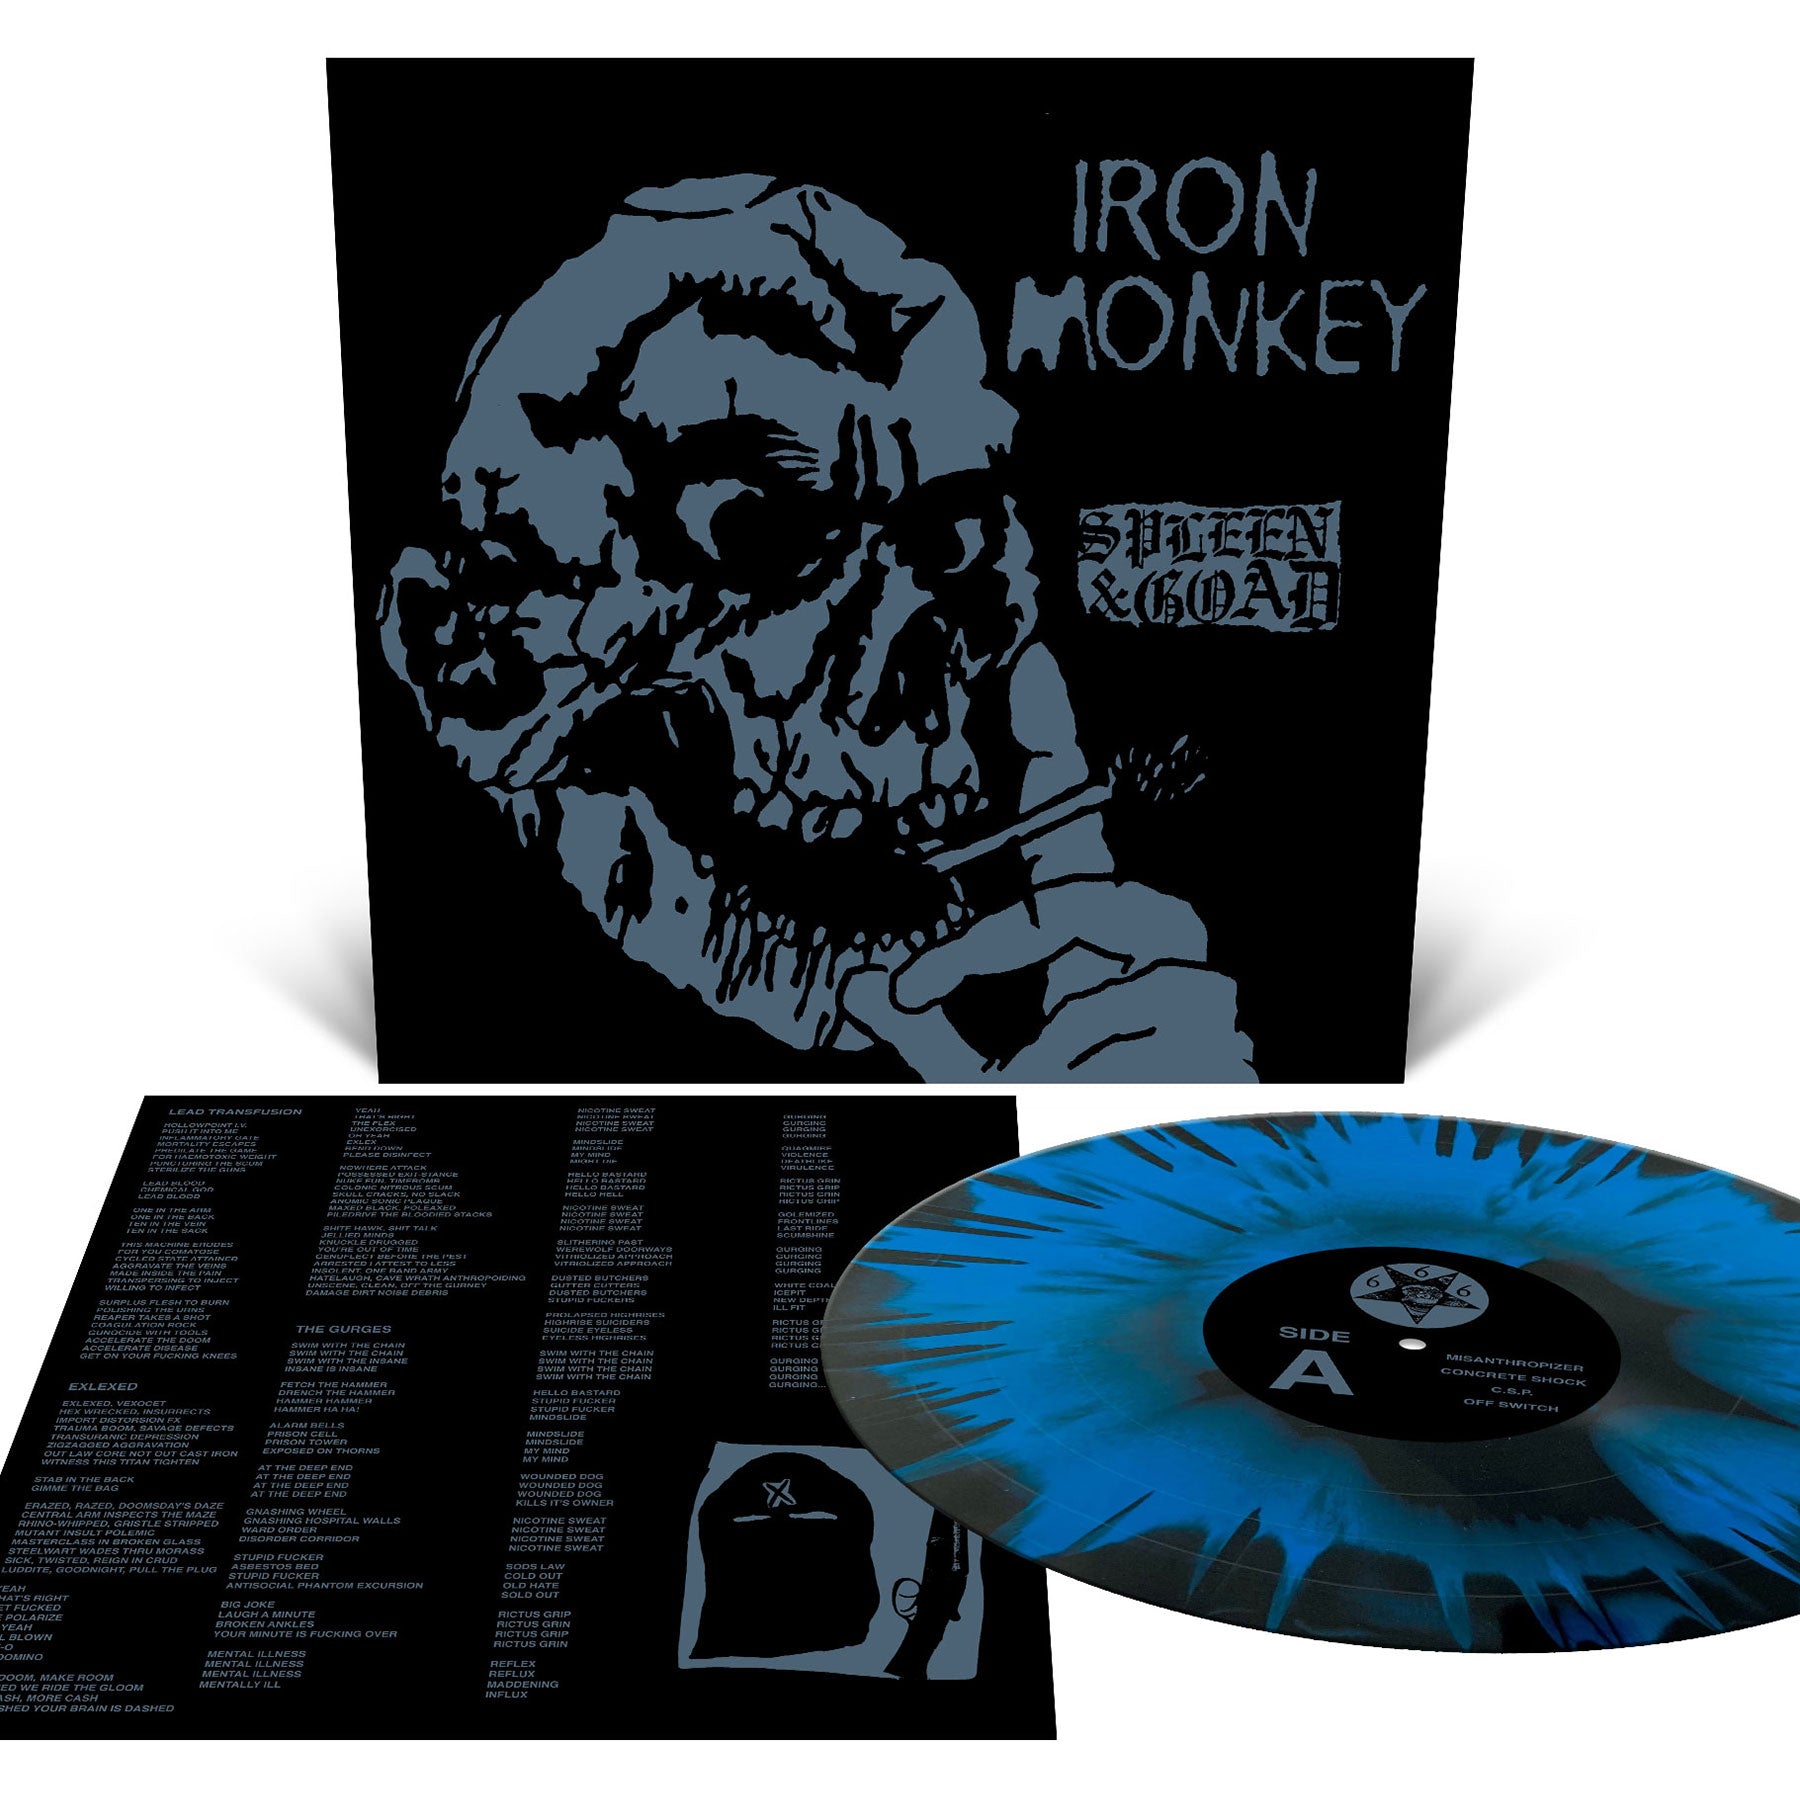 Iron Monkey "Spleen & Goad" 12"